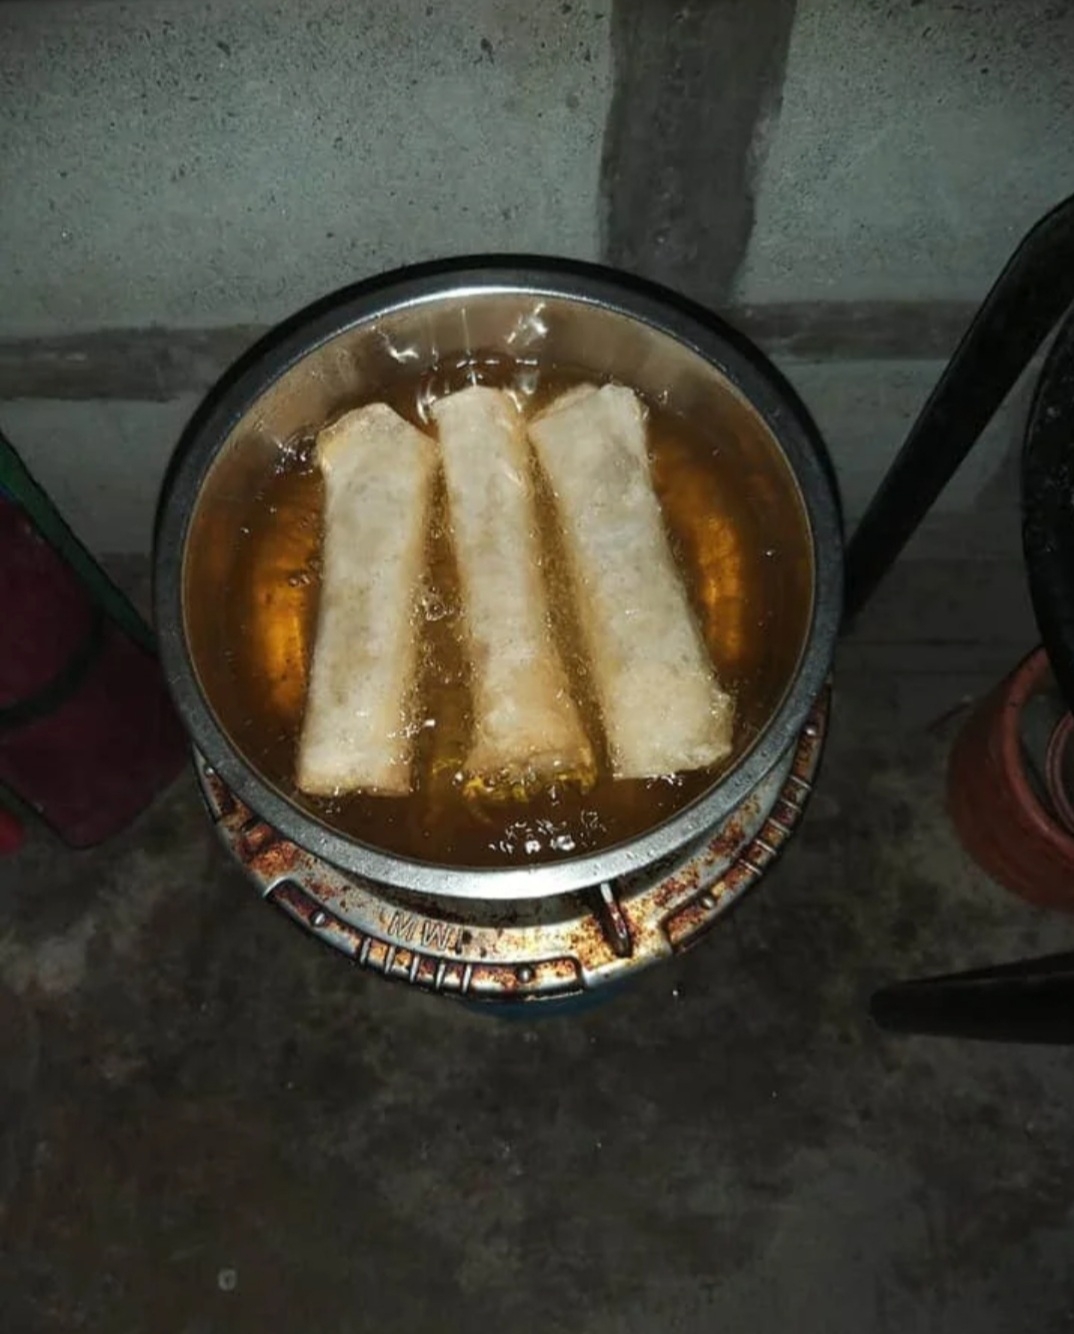 フィリピン料理 ルンピアントウゲ(モヤシの春巻き)